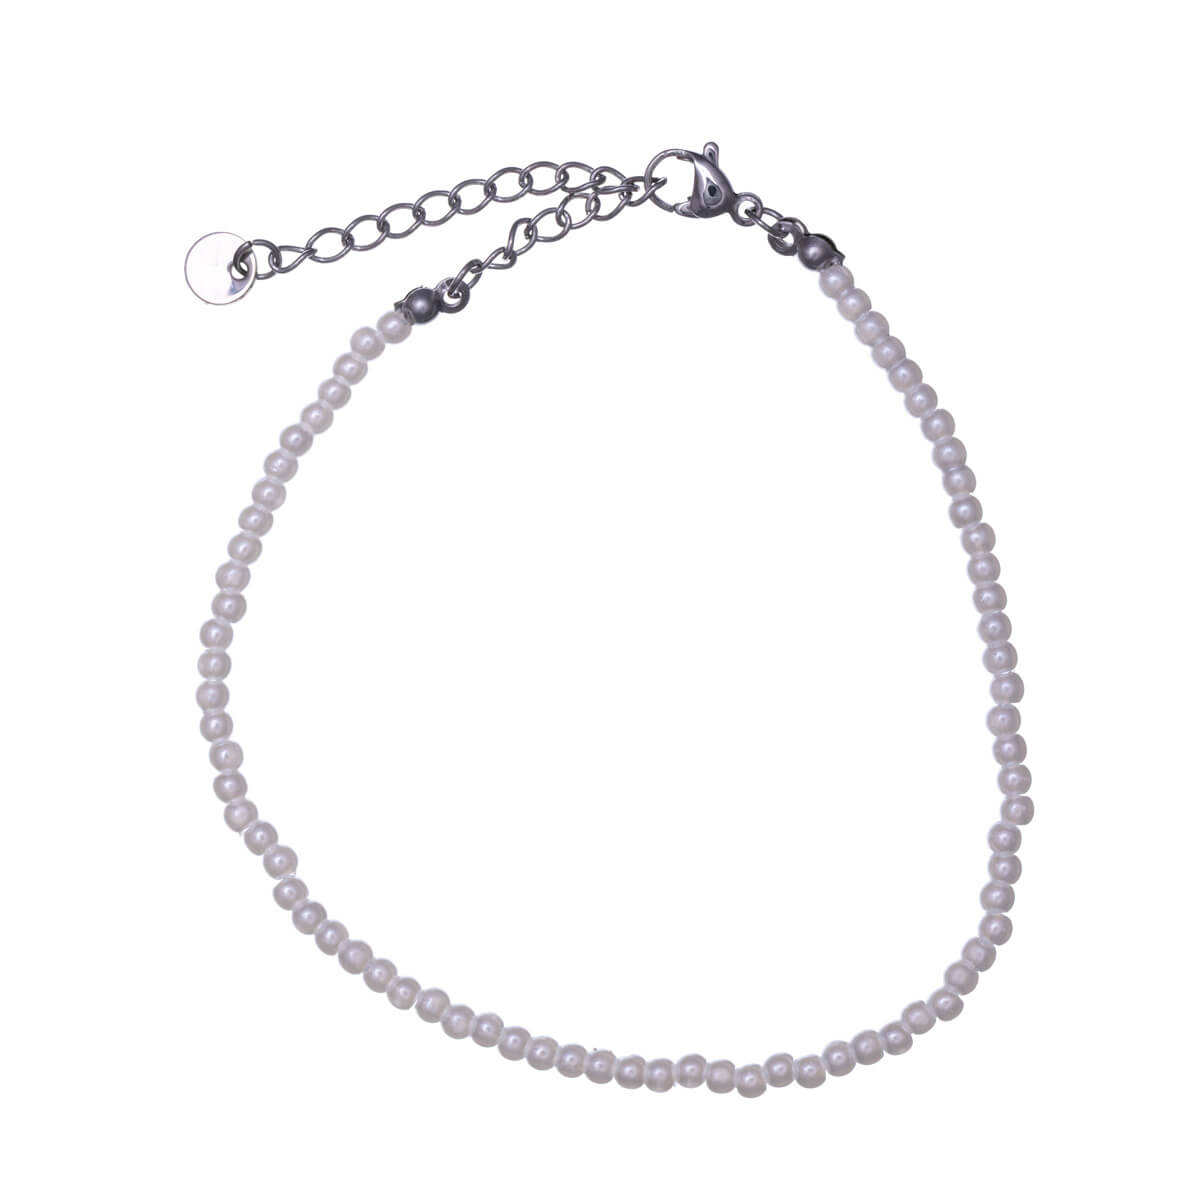 Steel bead ankle chain 3mm (Steel 316L)